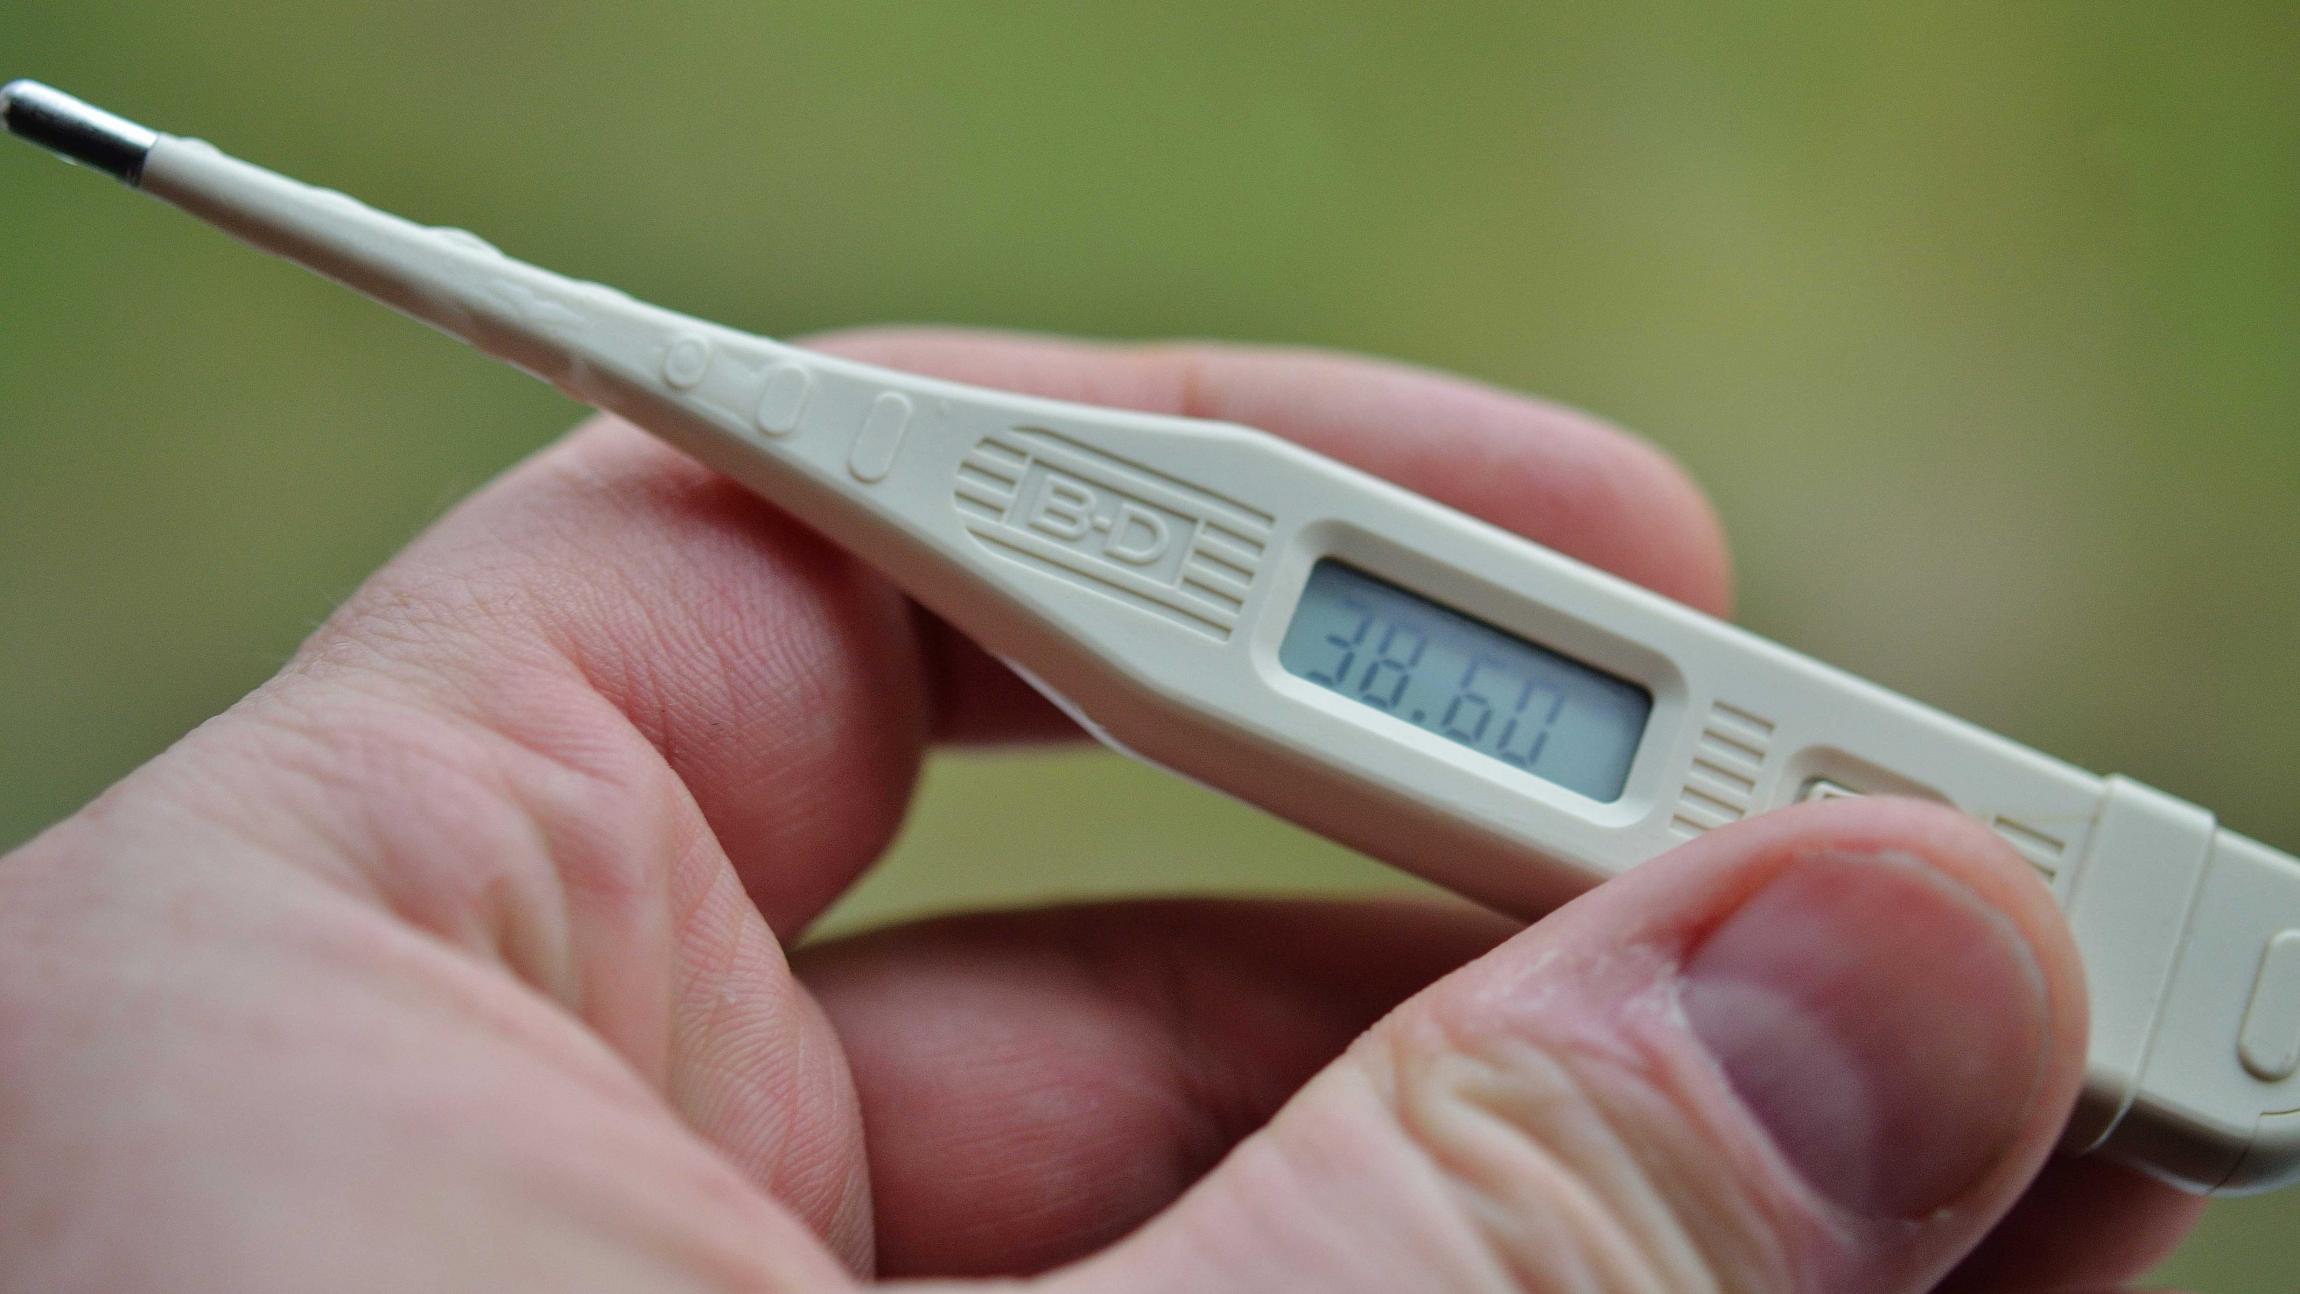 En hånd holder et termometer, der viser feber